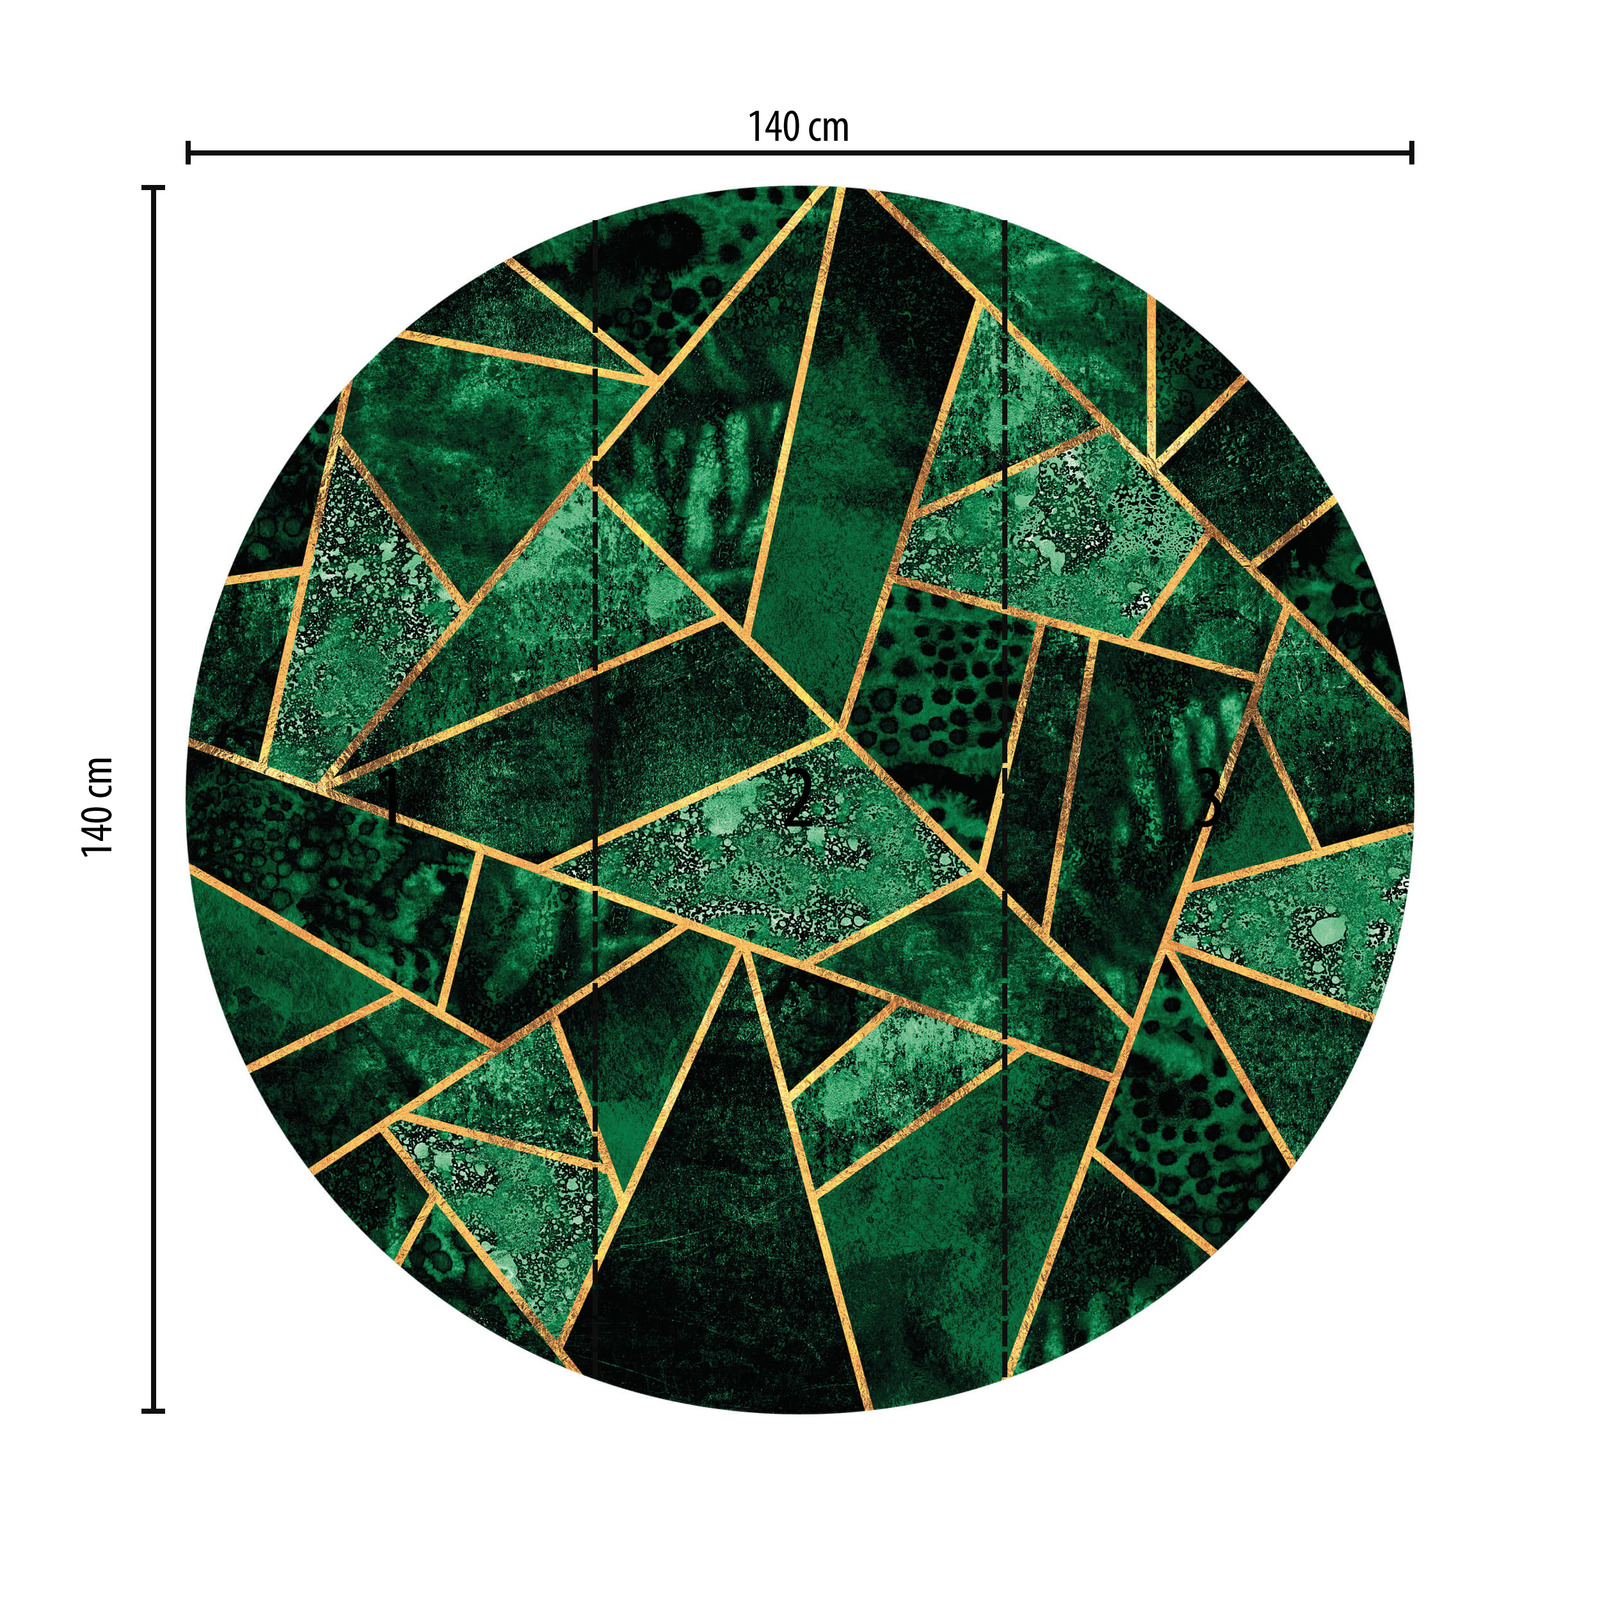             Muurschildering ronde geometrische vormen, groen
        